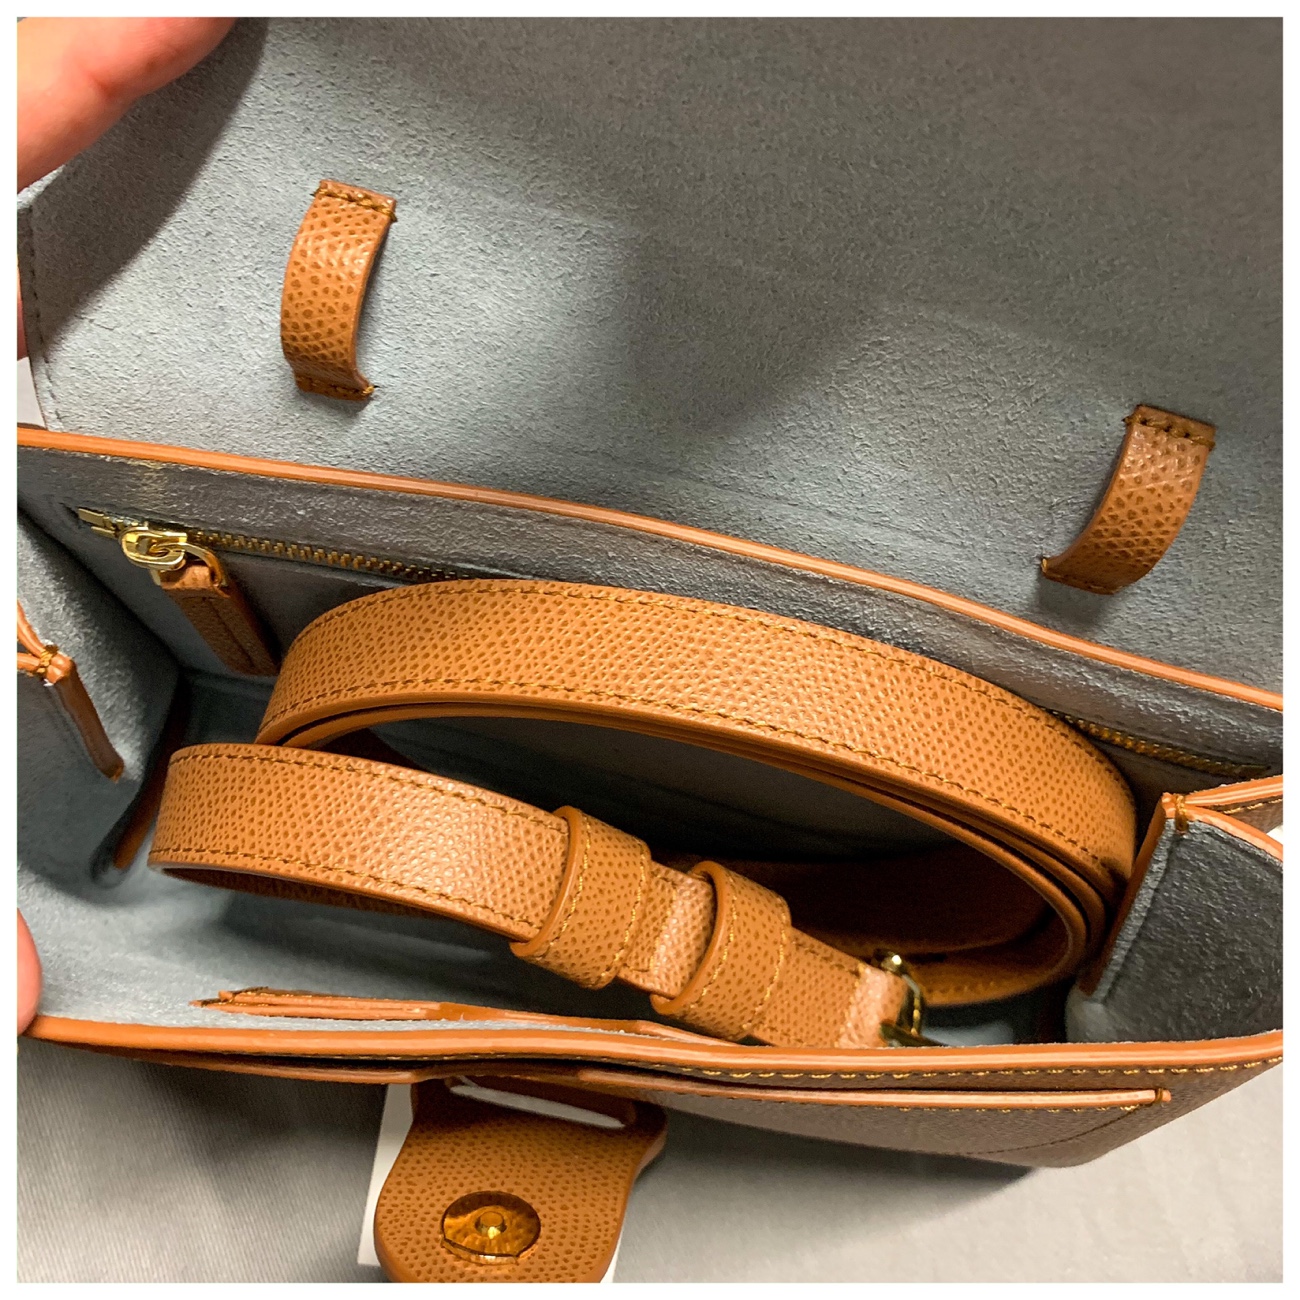 Senreve Aria Belt Bag, What Fits Inside